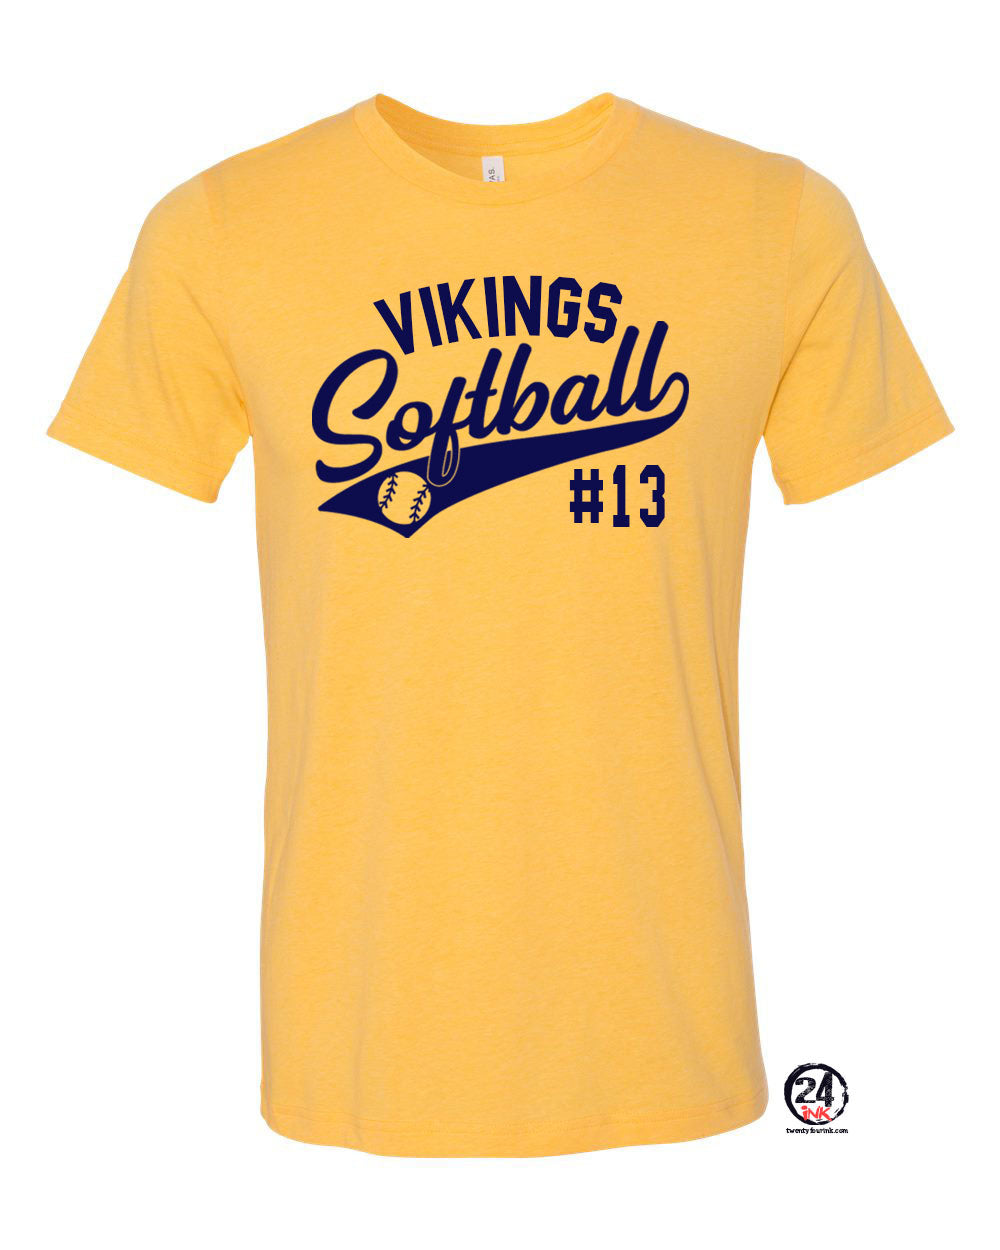 Vikings Softball Heather Yellow t-Shirt